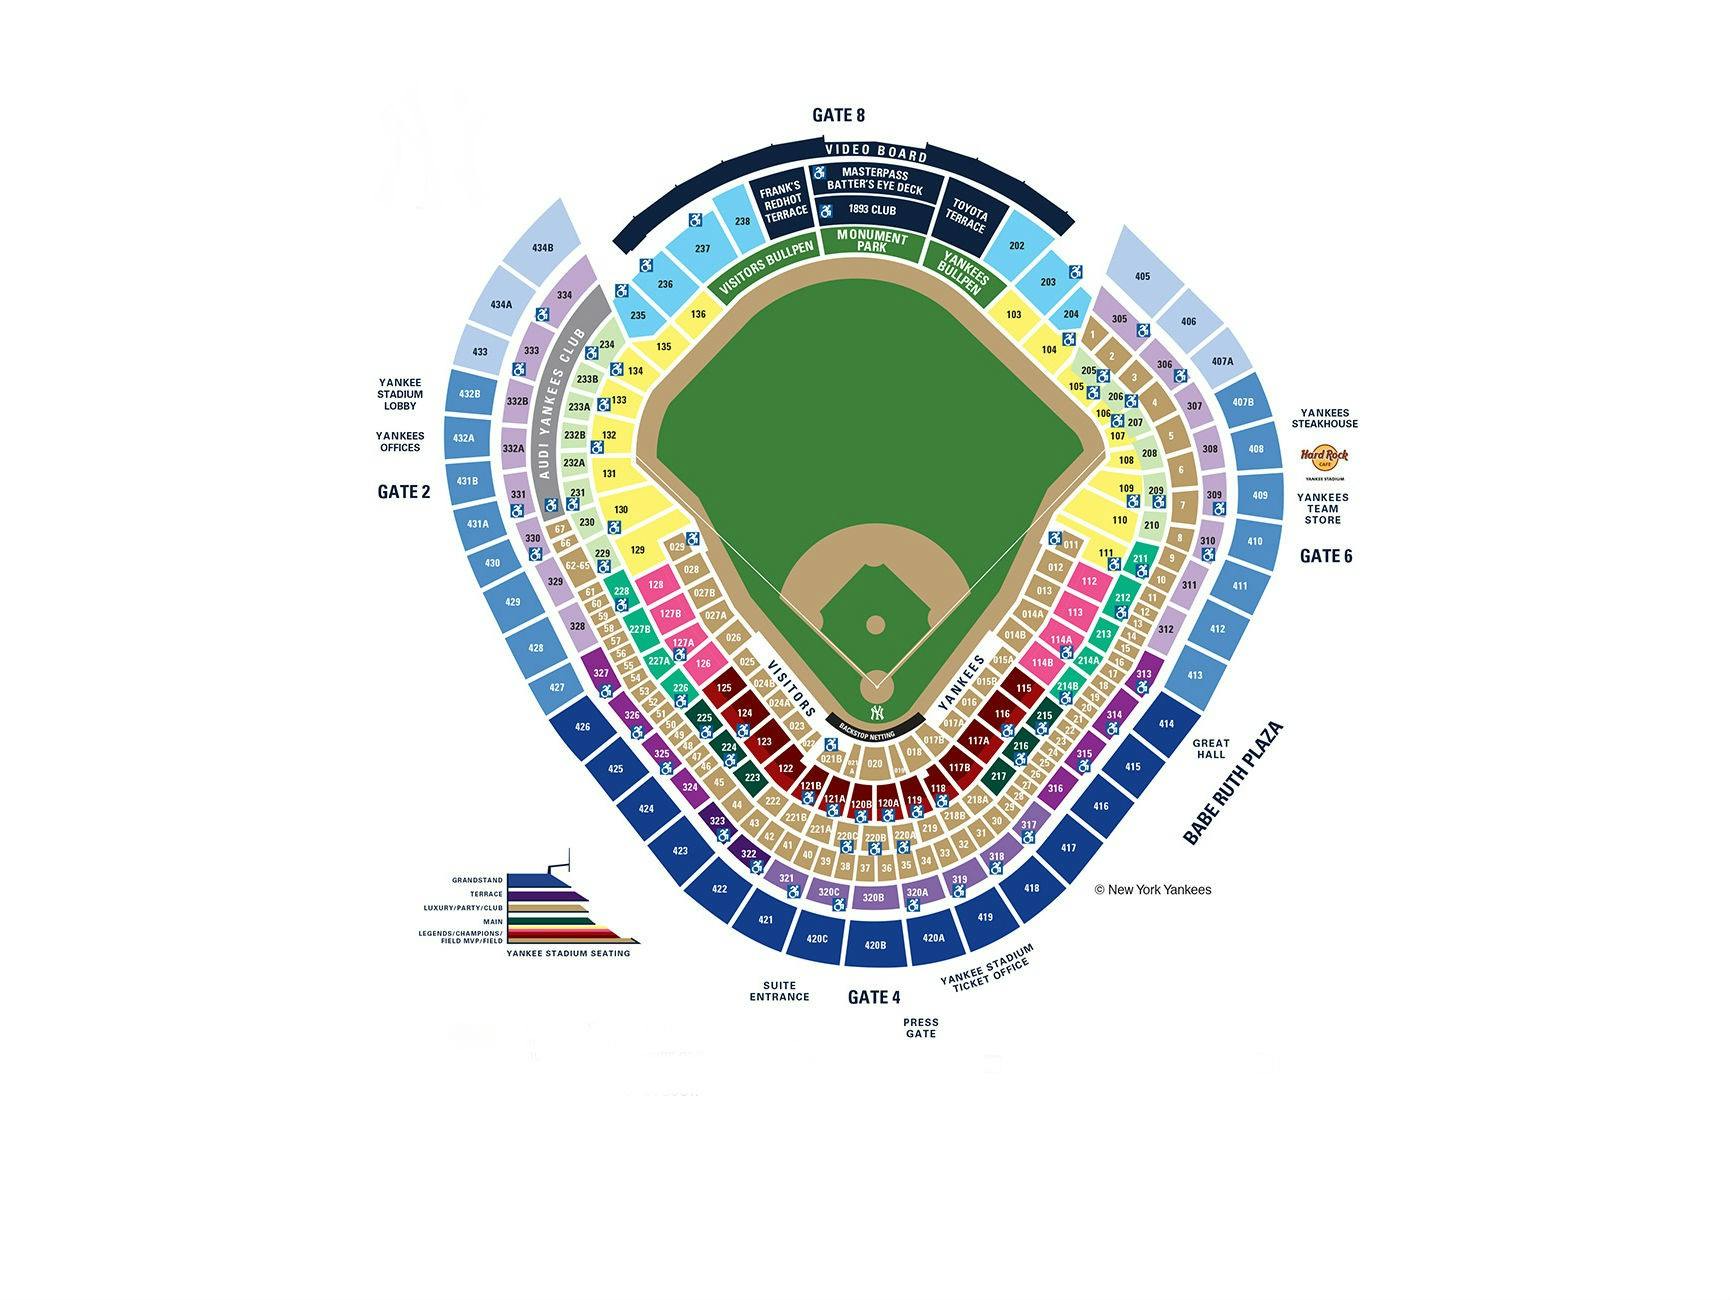 Yankees Stadium seating plan.jpg